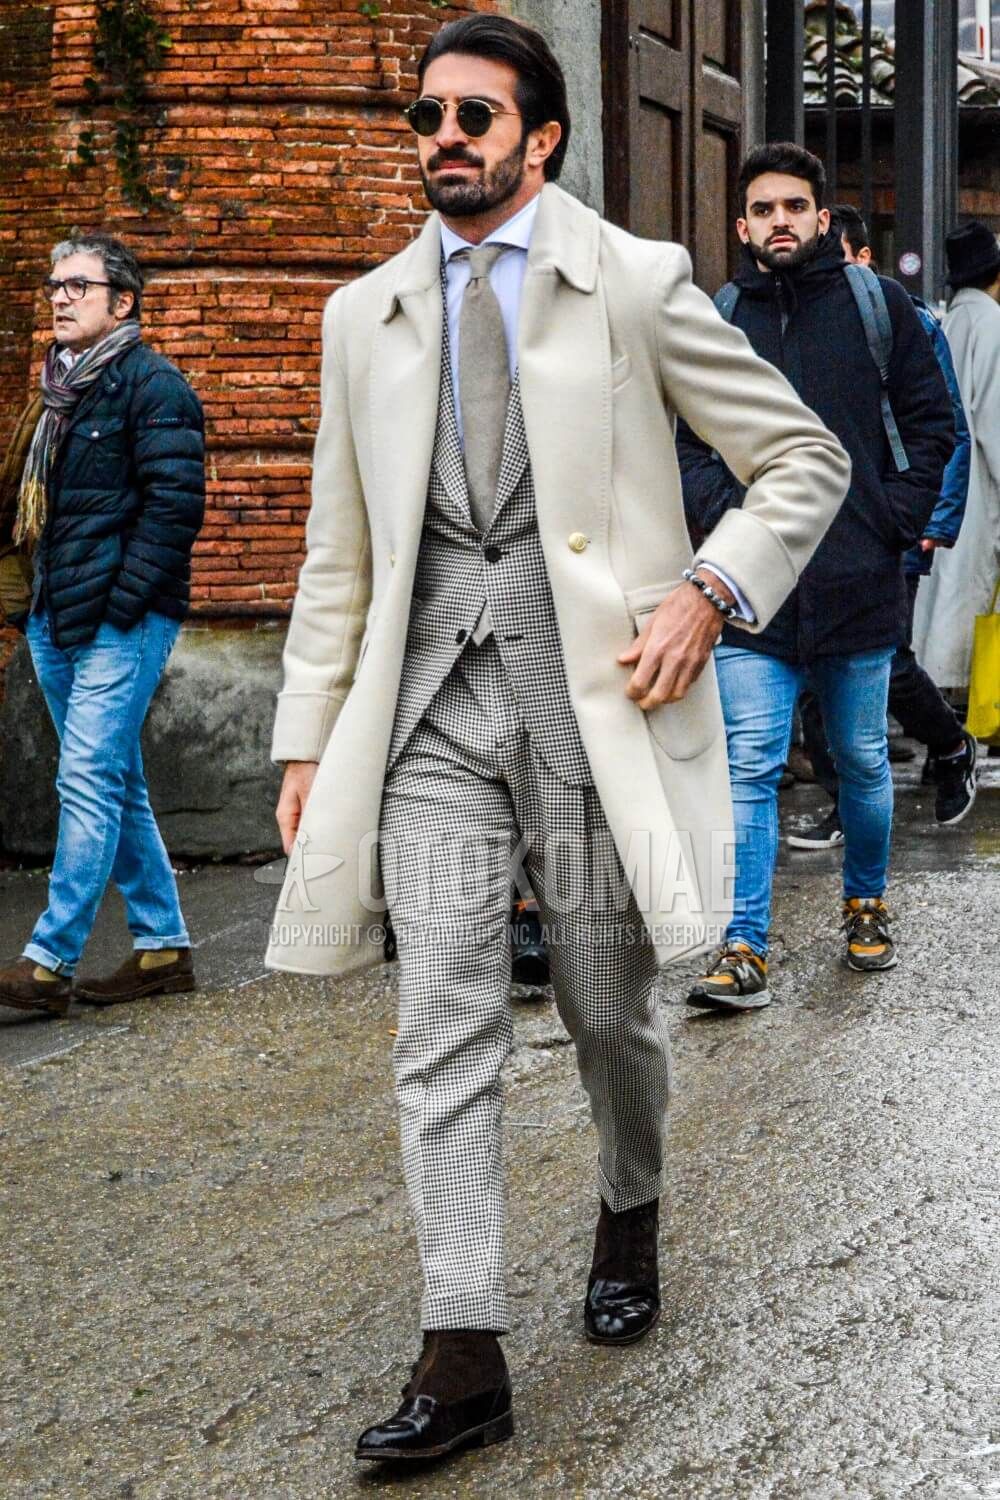 白コート メンズ特集 大人の男が参考にしたい注目の着こなしとアイテムを紹介 メンズファッションメディア Iicfiicf 男前研究所